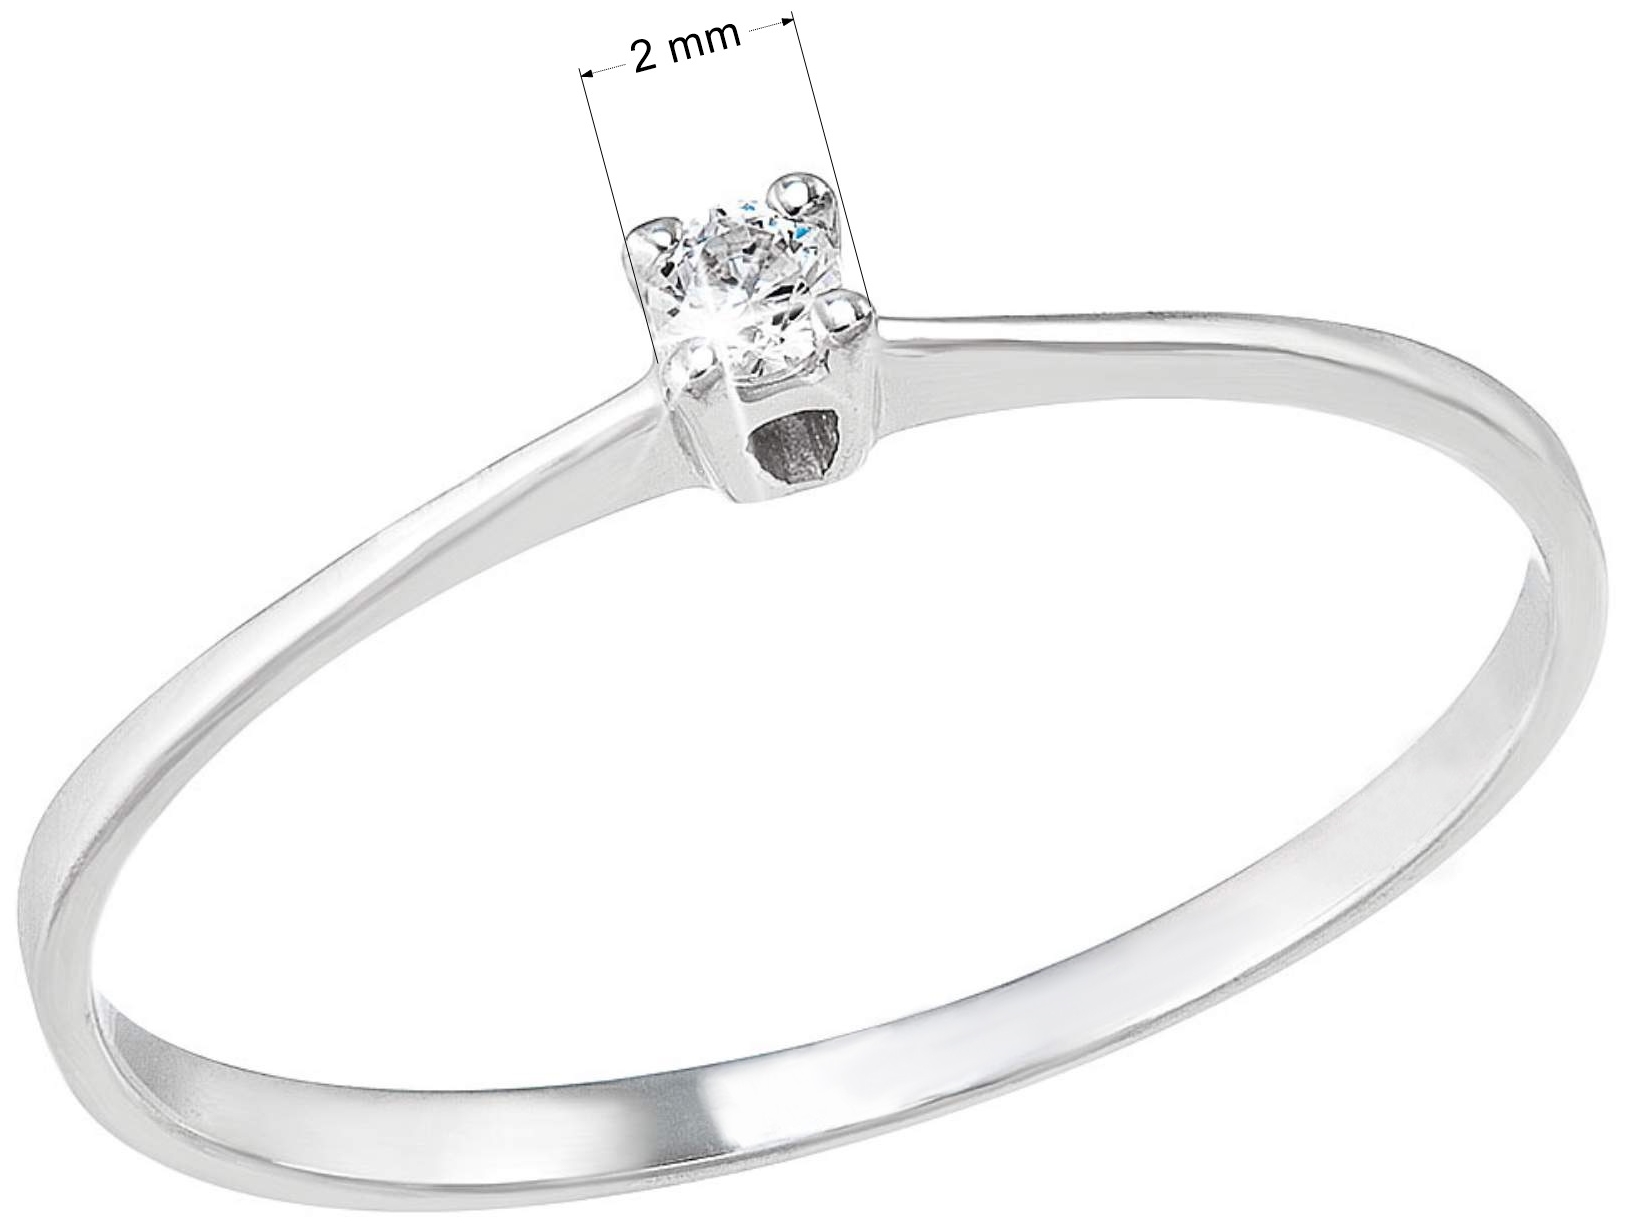 Strieborný prsteň s jedným jemným zirkónom biely 885008.1